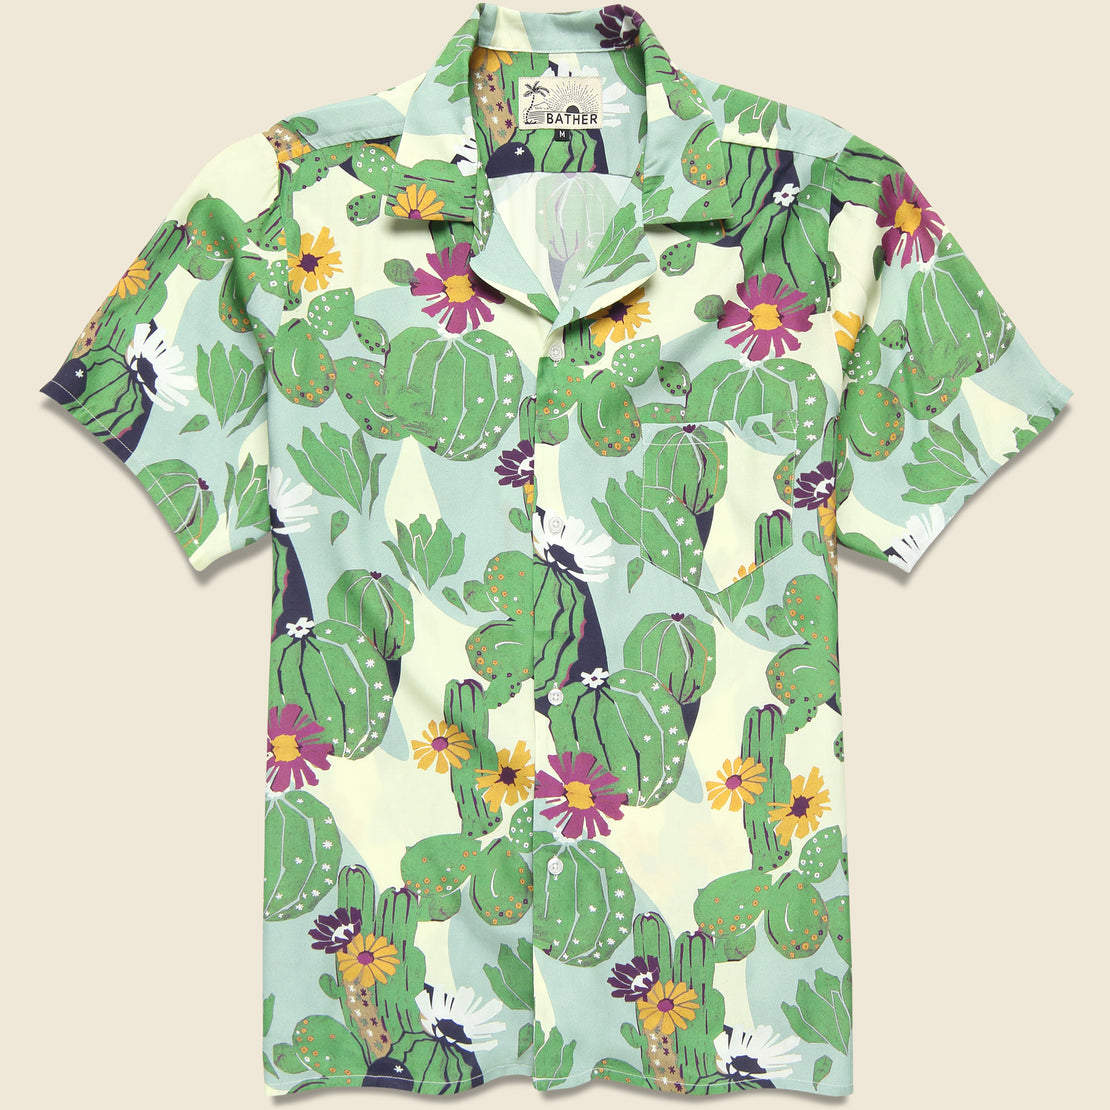 Bather Cactus Camp Shirt - Multi